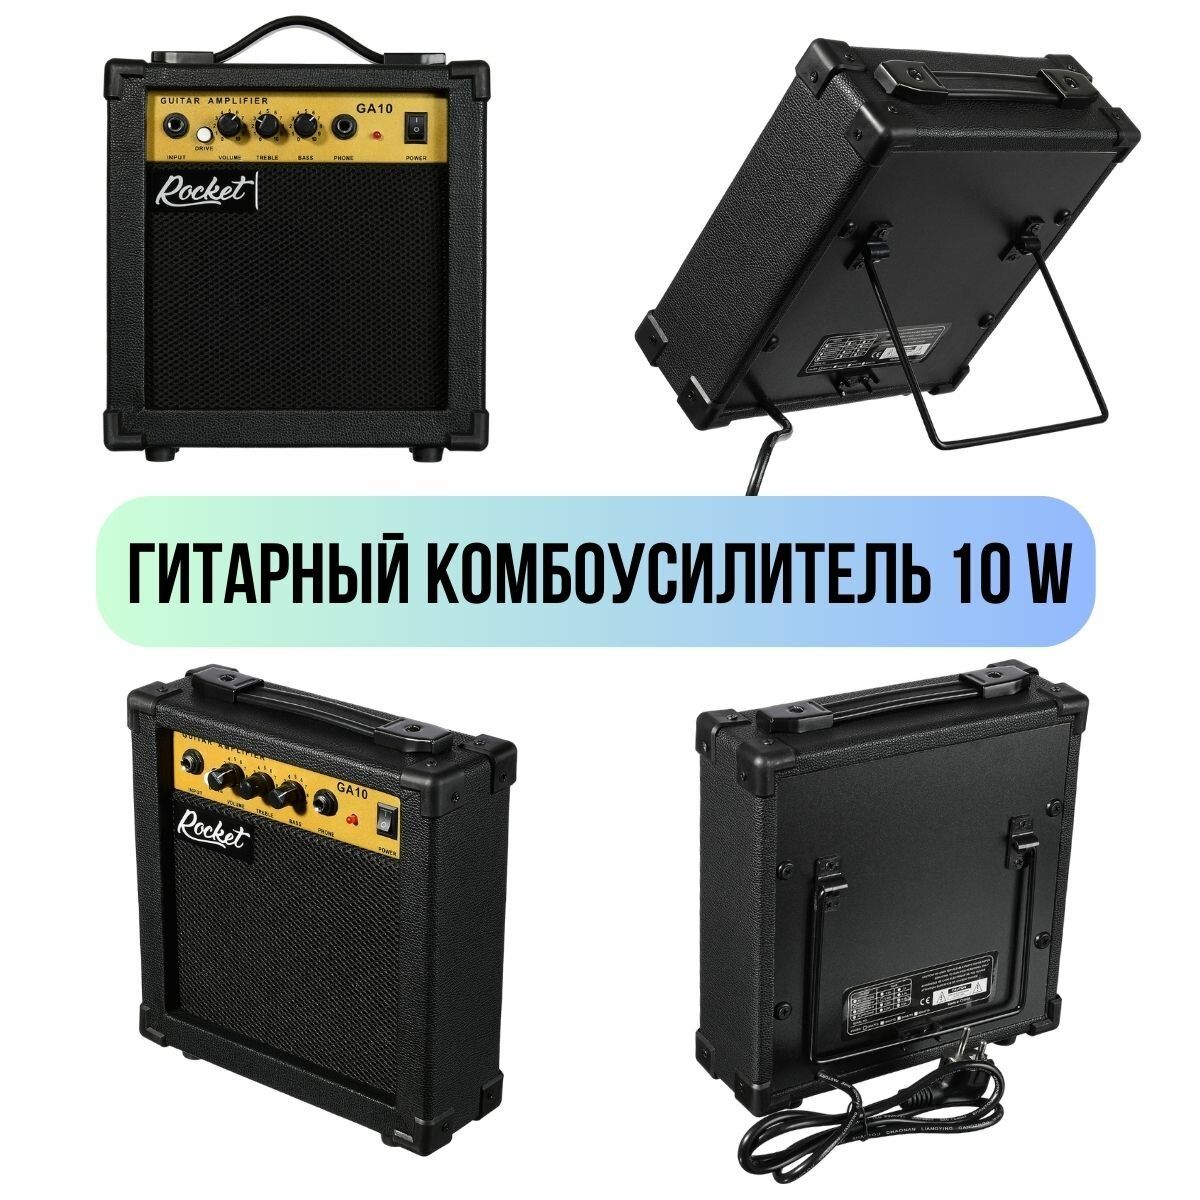 Электрогитарный набор ROCKET PACK-1 BK комплект с электрогитарой Stratocaster черный цвет и аксессуары